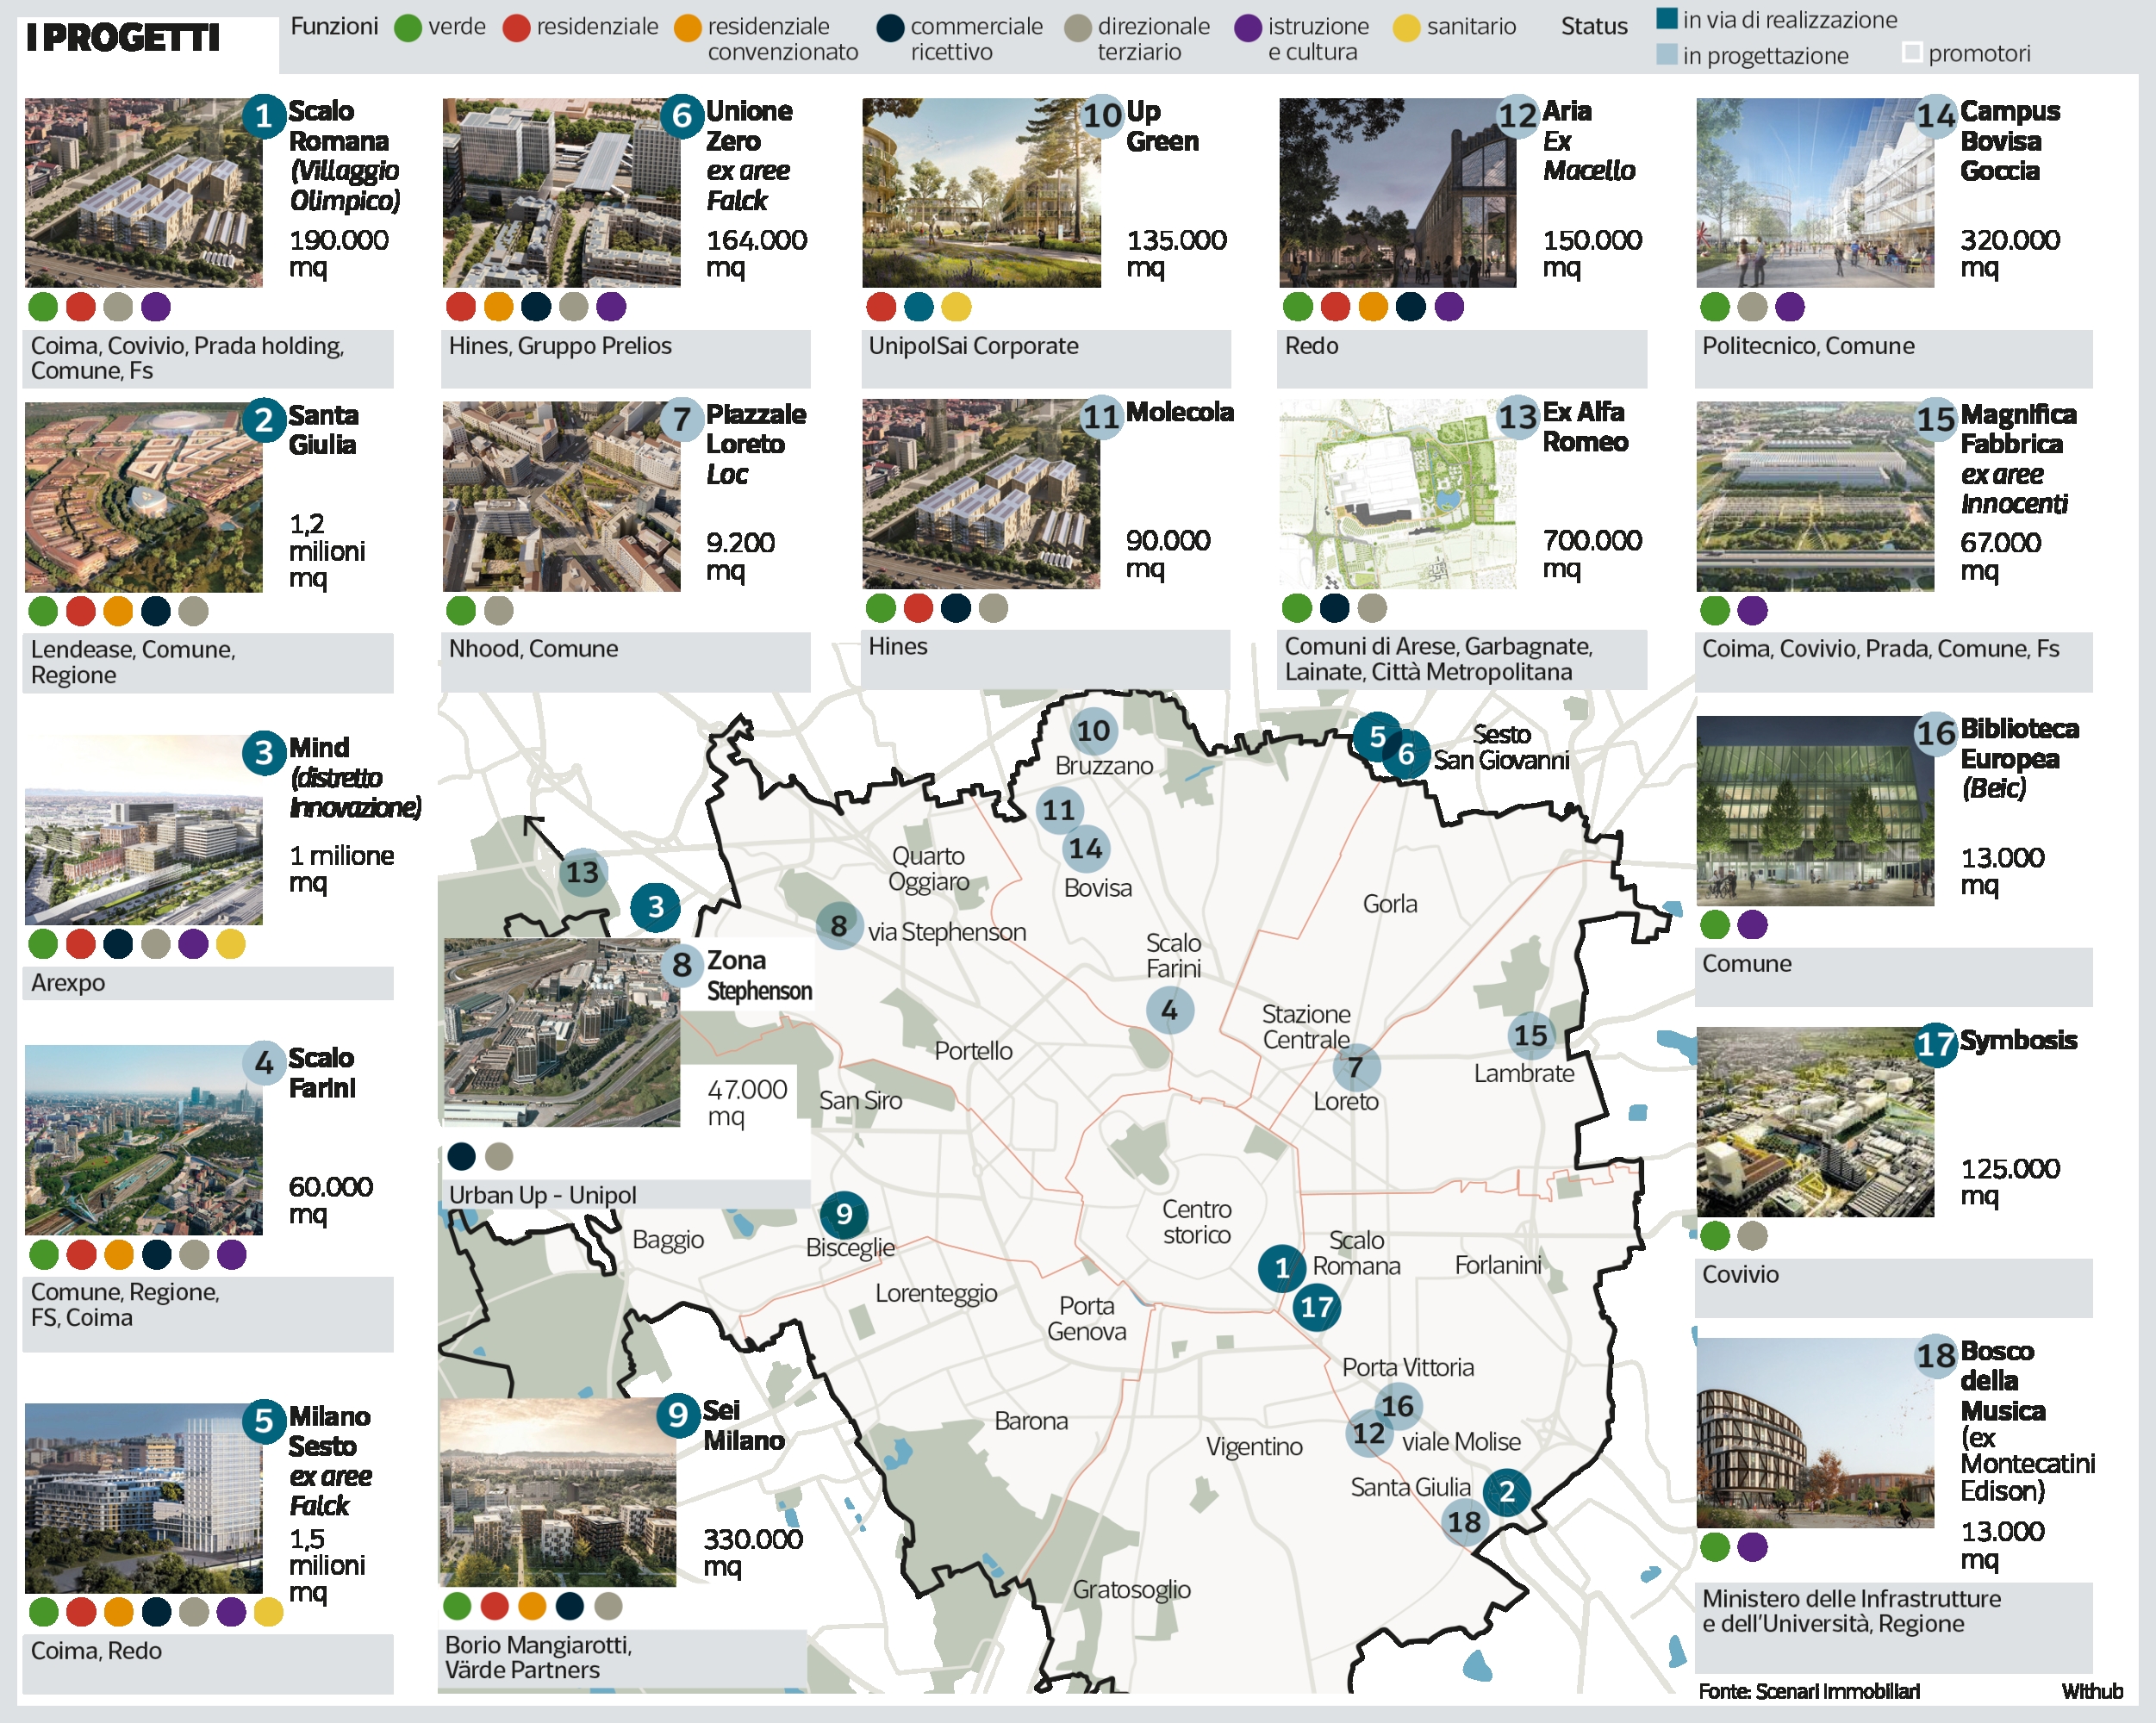 Corriere della sera: Milano rigenerata risparmiando il suolo: la mappa dei grandi progetti urbani nelle aree dismesse